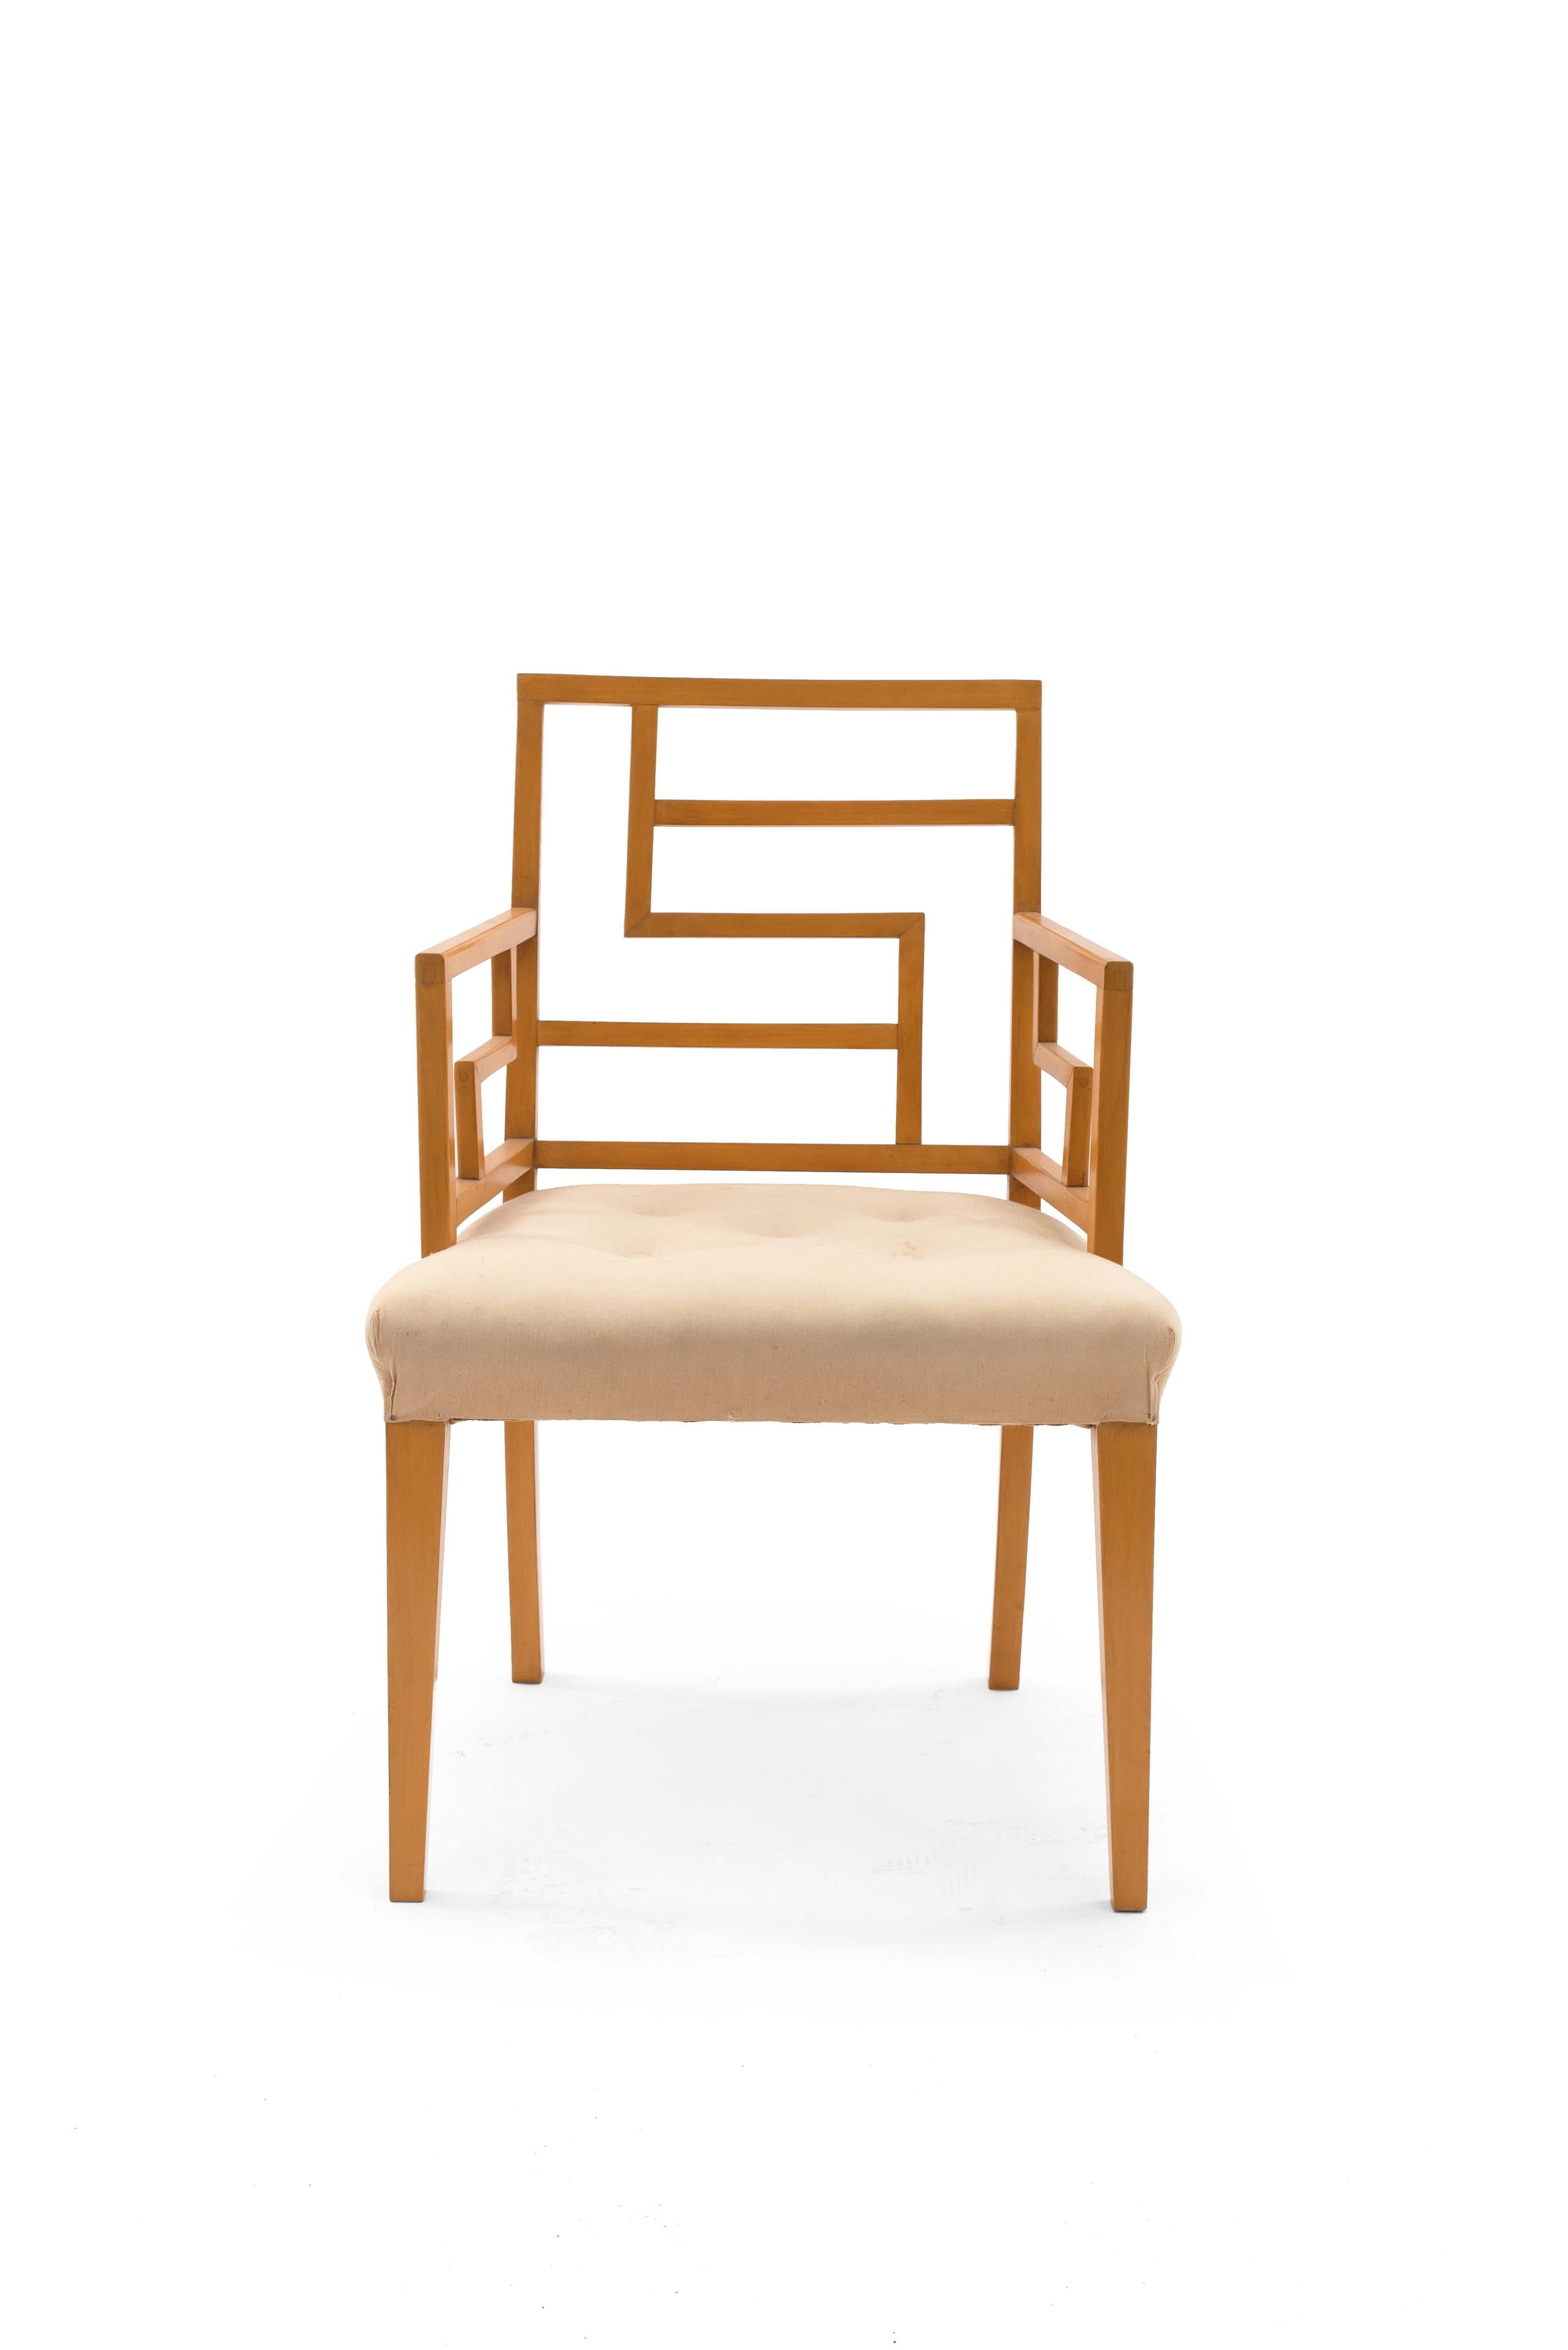 4 fauteuils anglais des années 1940 en érable avec dossier à motif géométrique ouvert et assise tapissée (modèle pour la salle à manger du Claridge's Hotel, Londres).